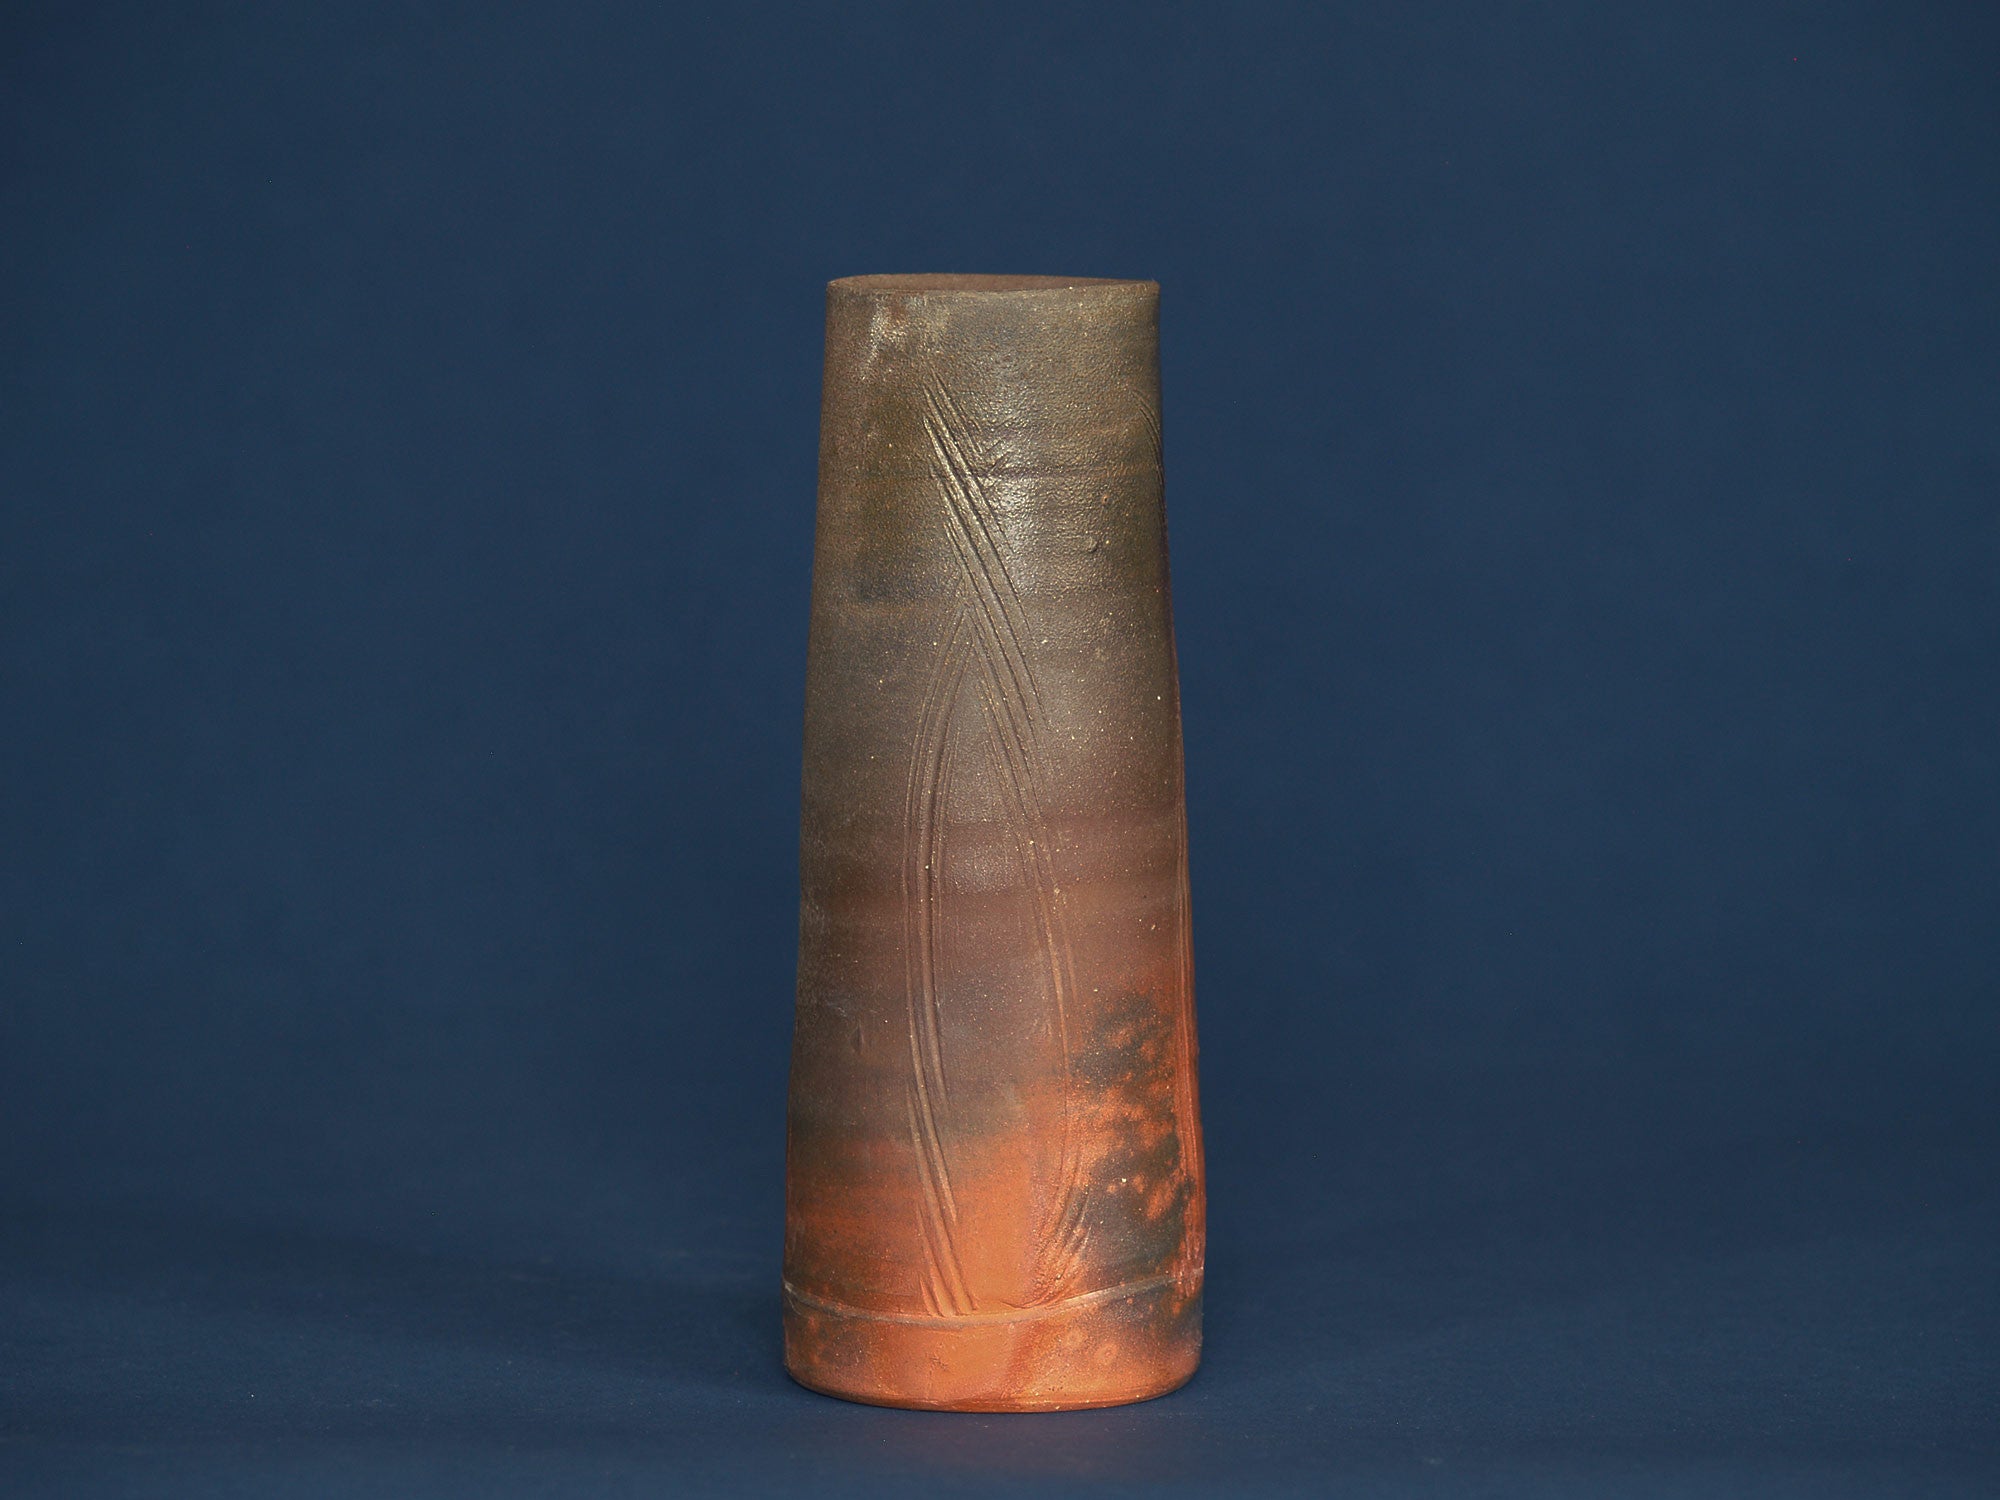 Vase hanaire scarifié de Sato Keishu, Japon (vers 1980)..Scarified Bizen ware vase by Sato Keishu, Japan (ca. 1980)